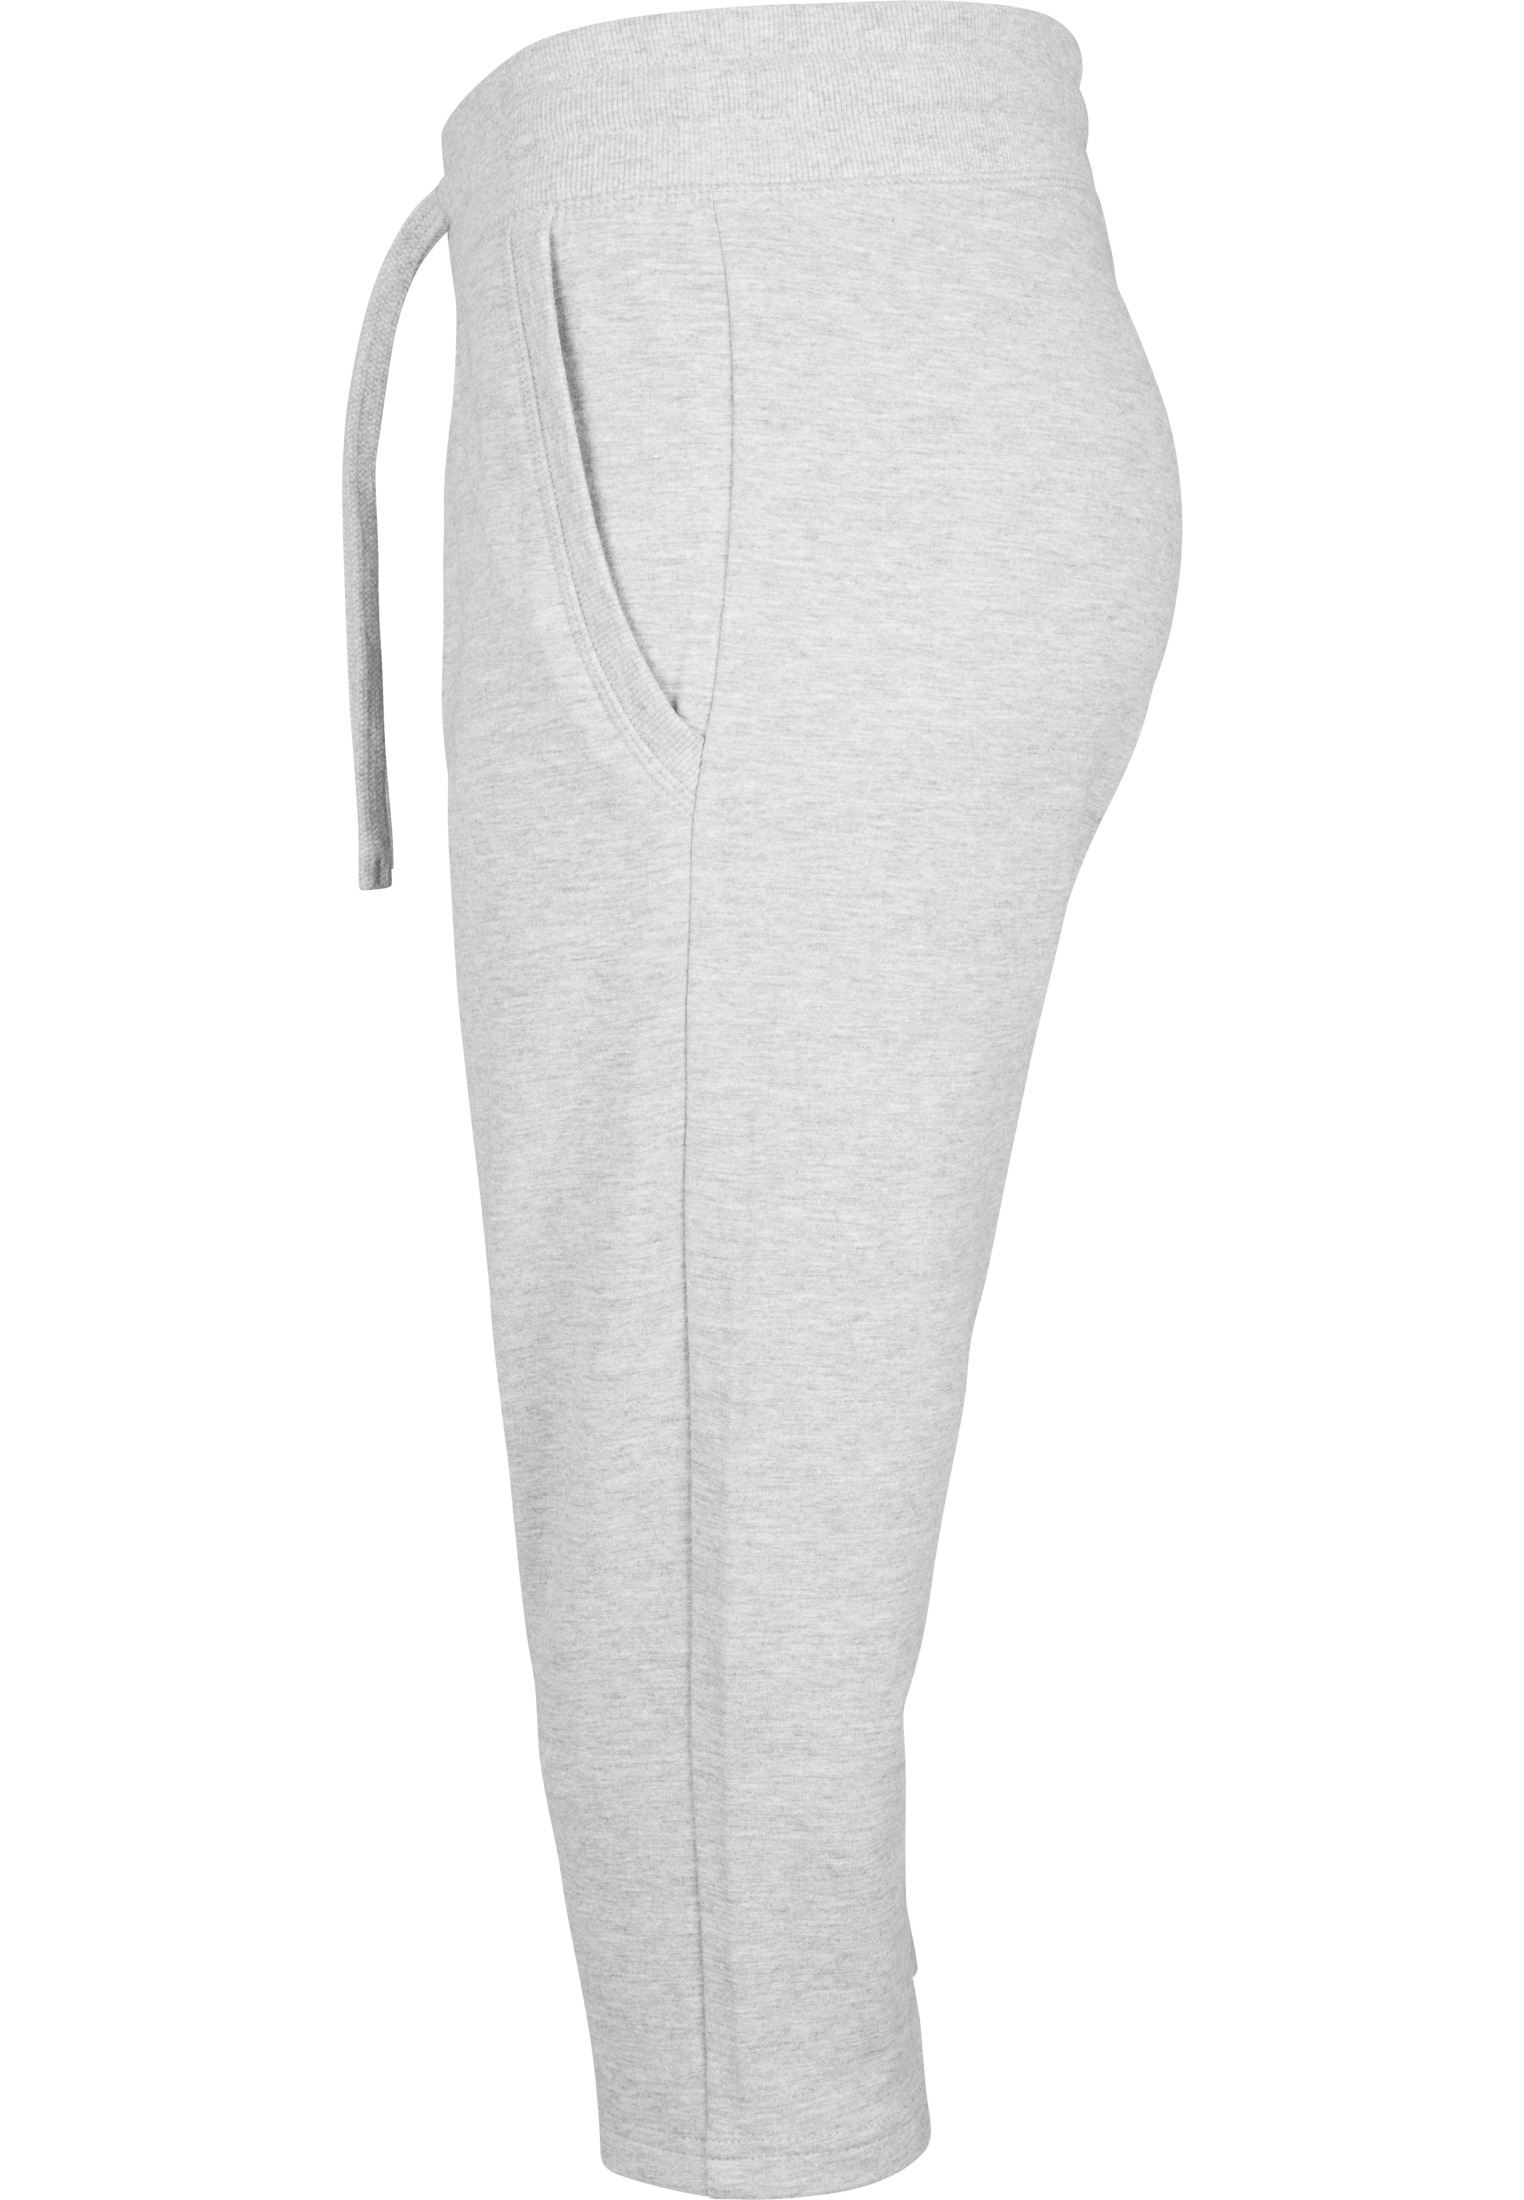 Ladies Capri Sweatpants Build Your Brand Women's Terry 3/4 Jogging Pants BY067